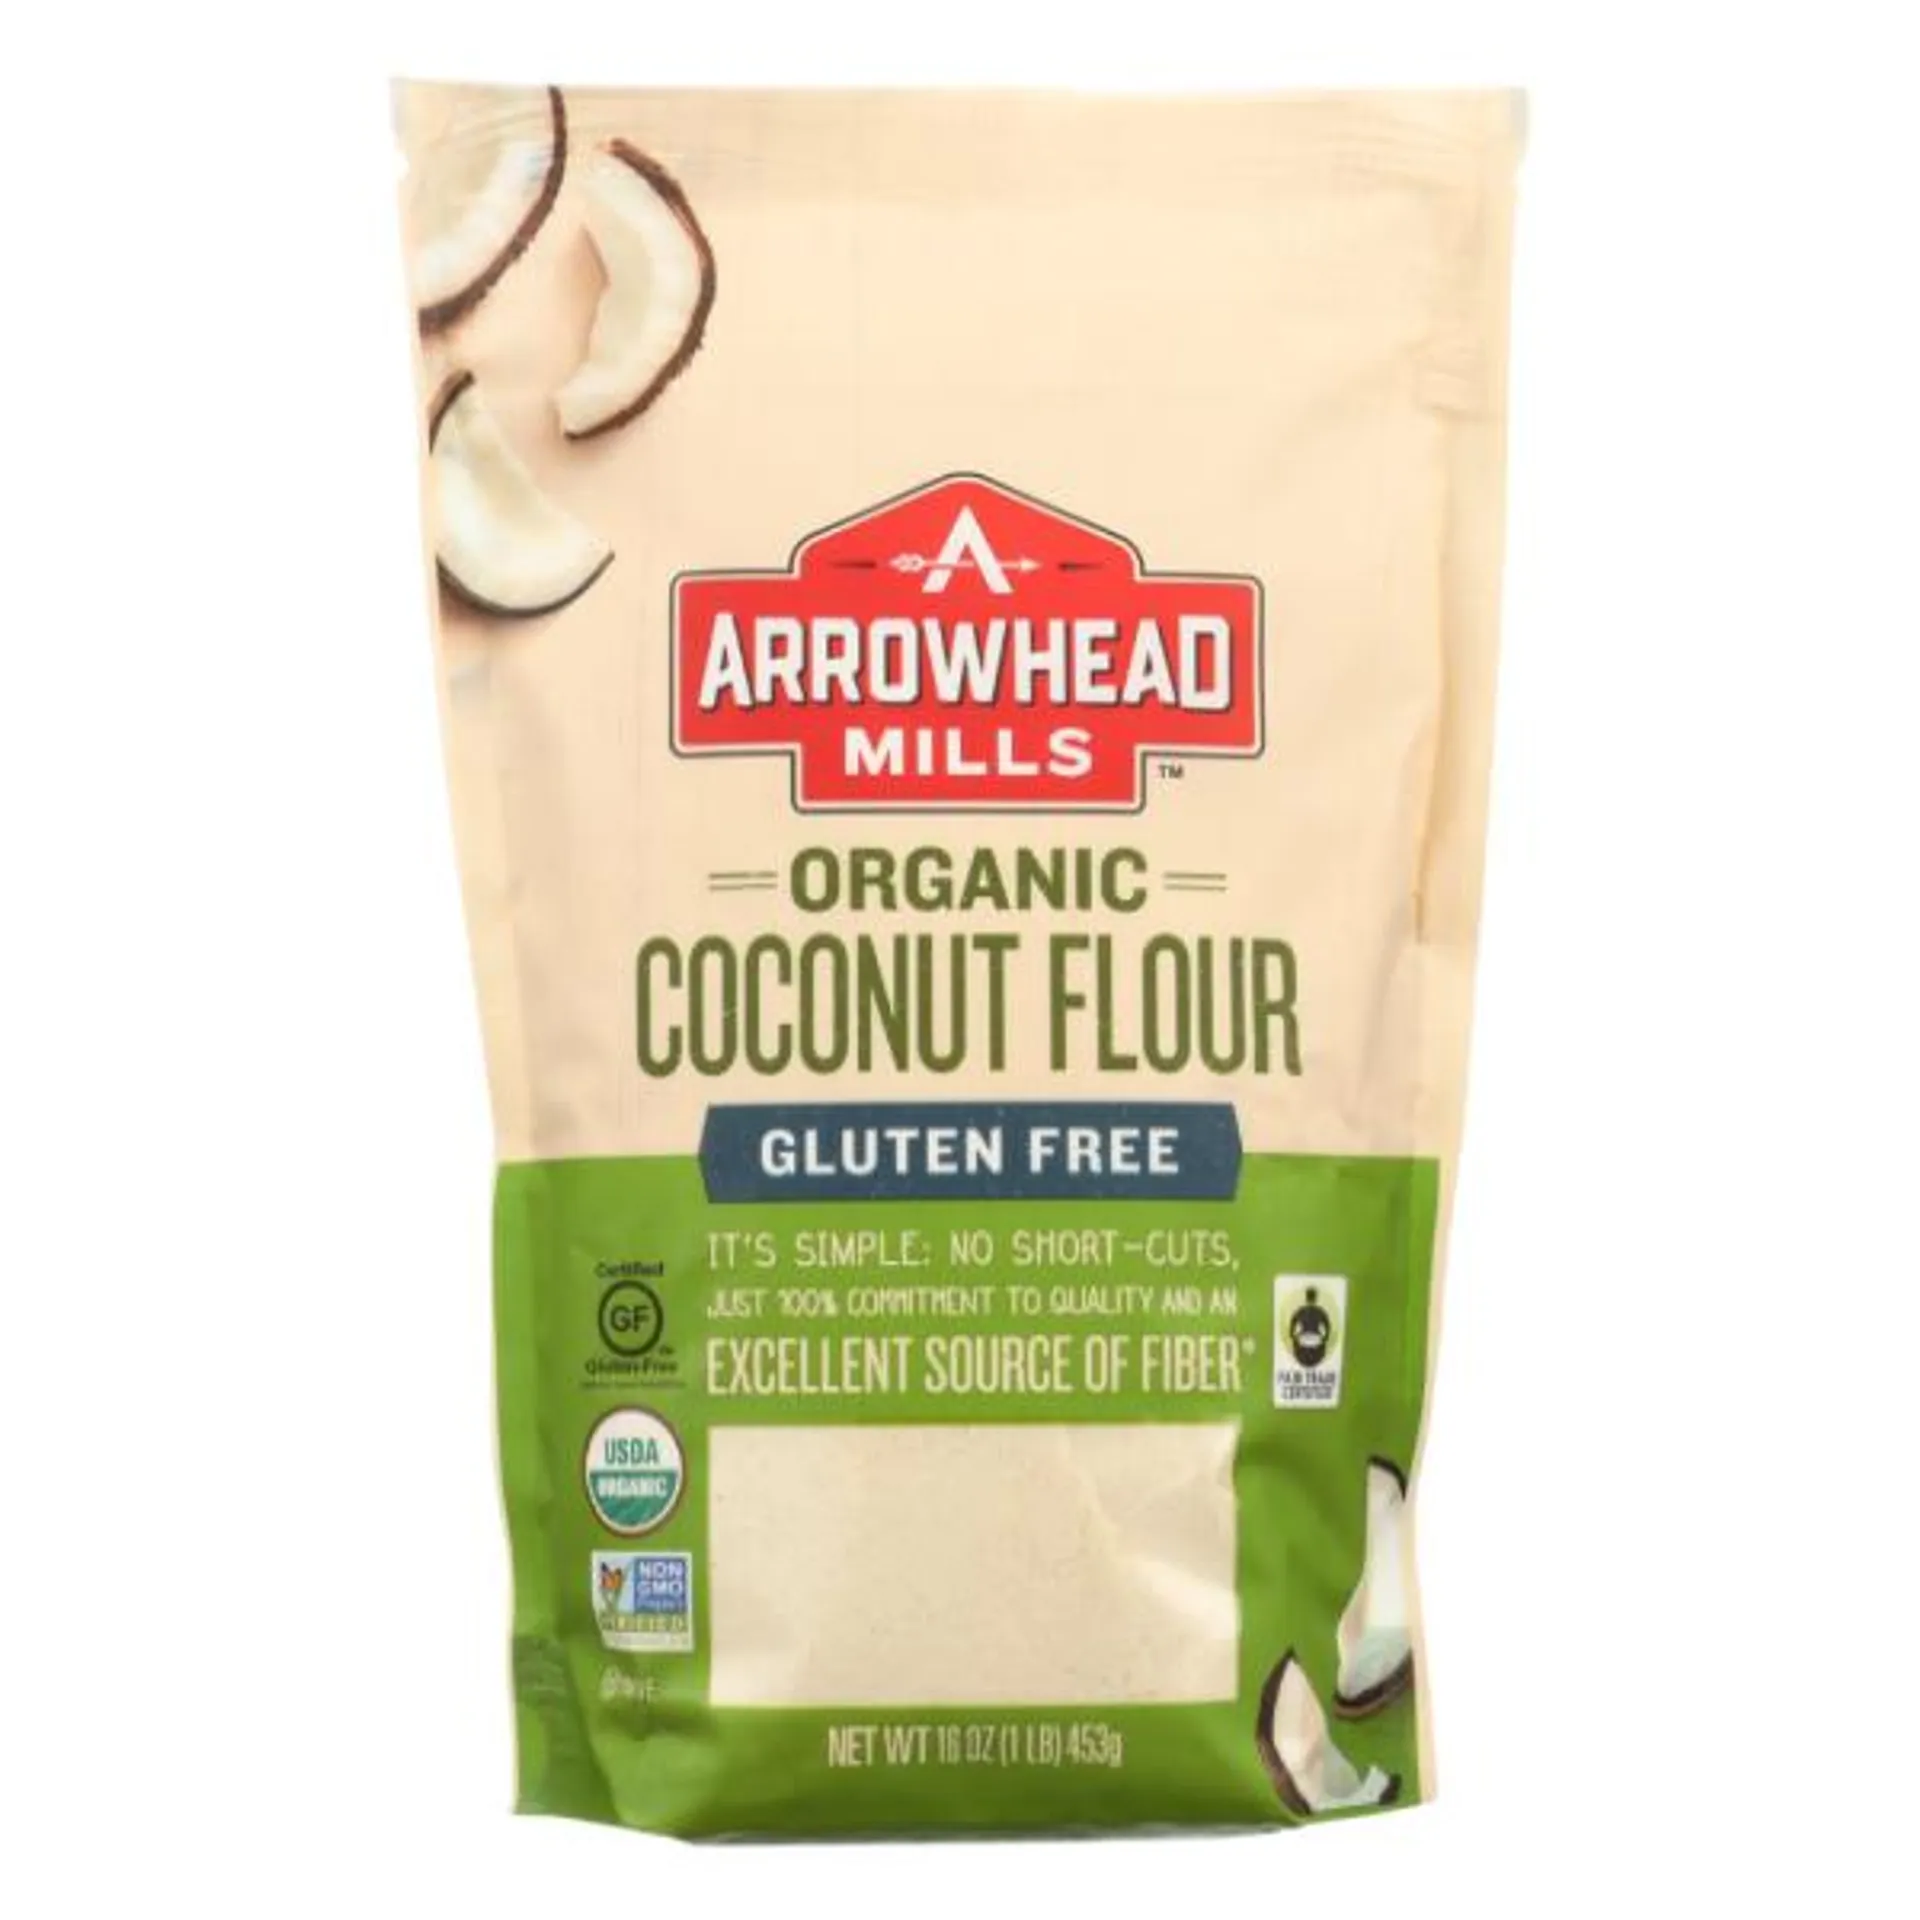 Arrowhead Mills Organic Gluten Free Coconut Flour - 16 Ounce